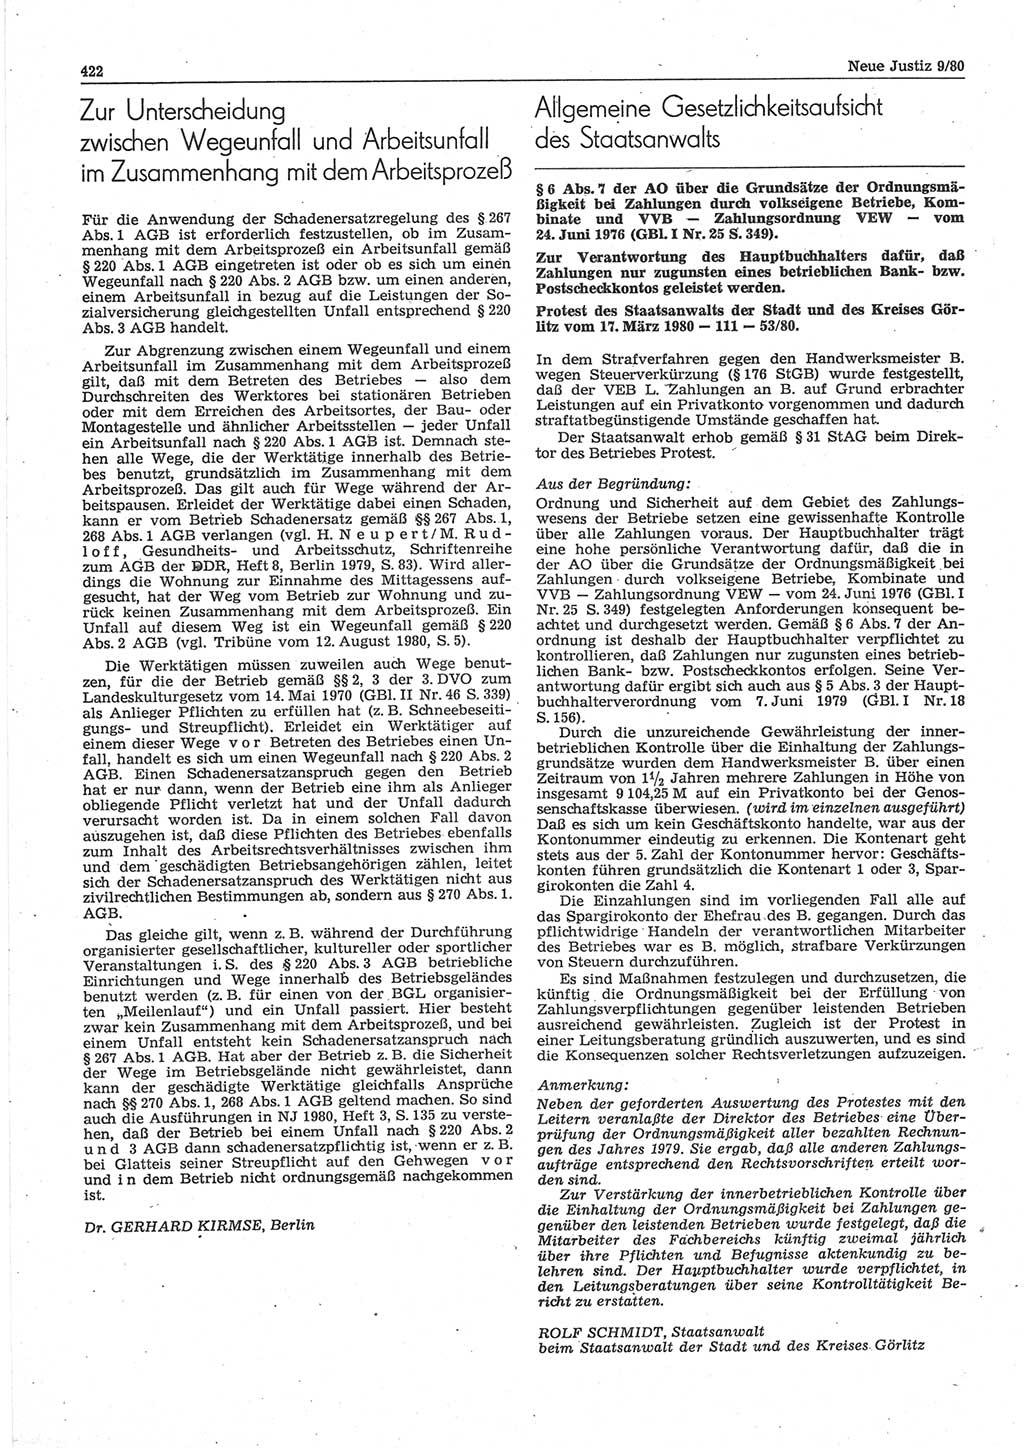 Neue Justiz (NJ), Zeitschrift für sozialistisches Recht und Gesetzlichkeit [Deutsche Demokratische Republik (DDR)], 34. Jahrgang 1980, Seite 422 (NJ DDR 1980, S. 422)